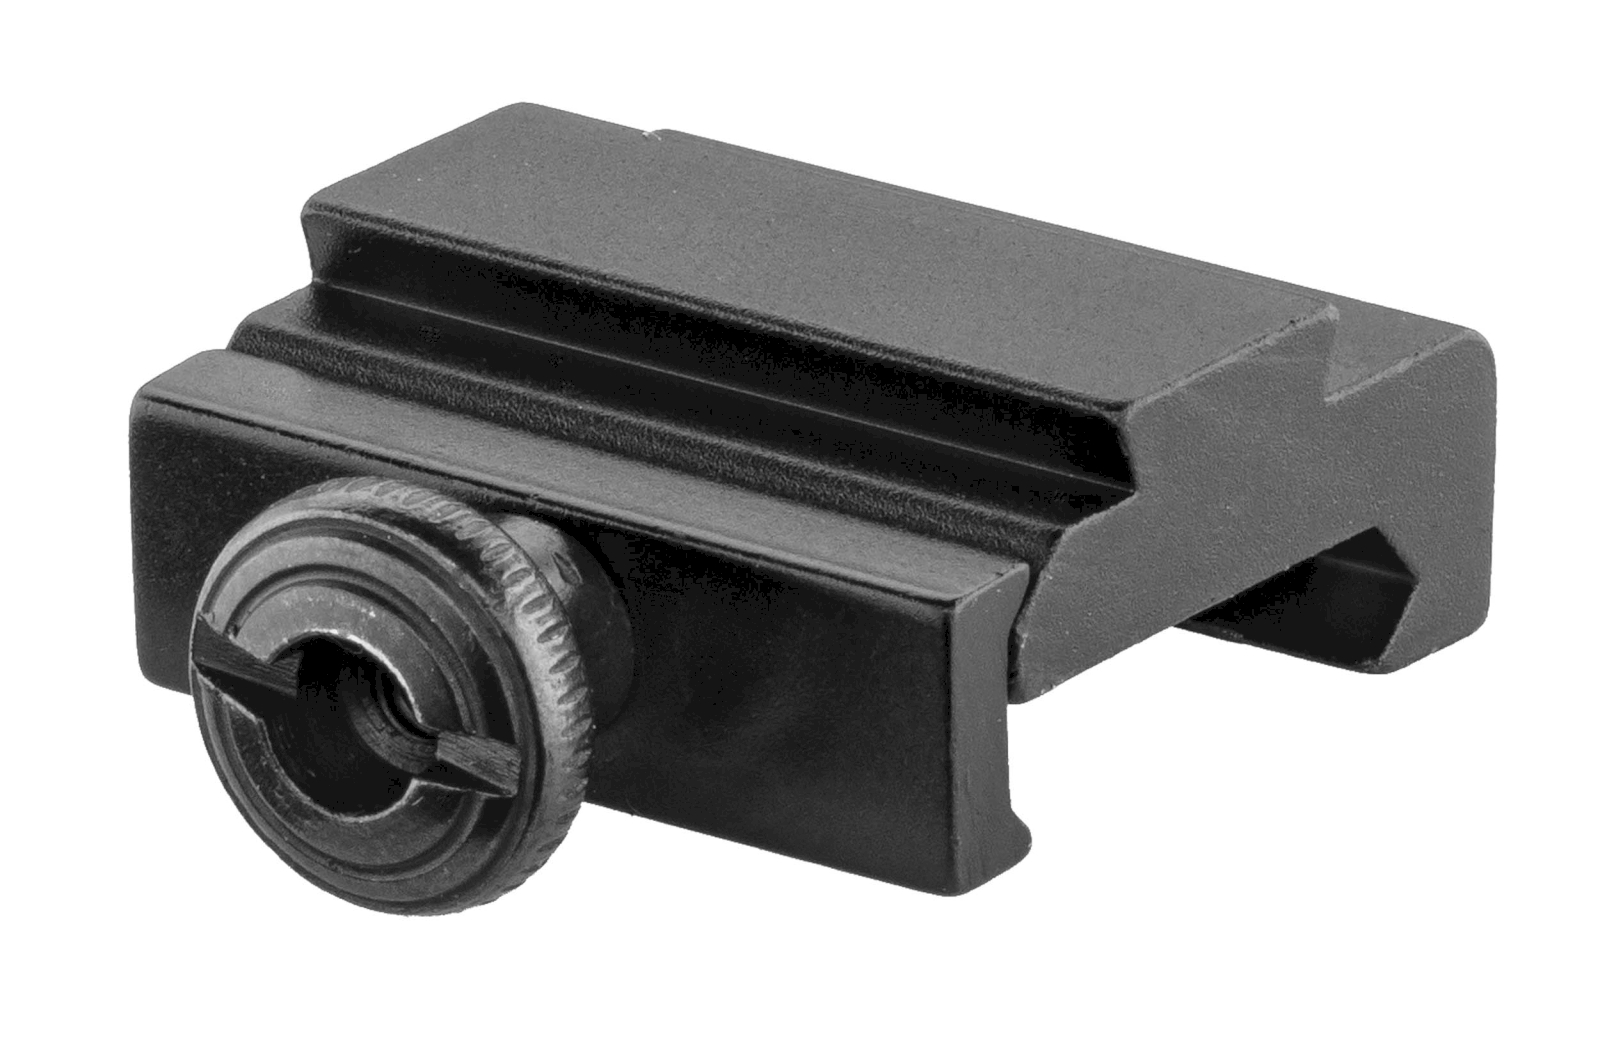 Rail adaptateur de picatinny ( de 11mm vers picatinny )